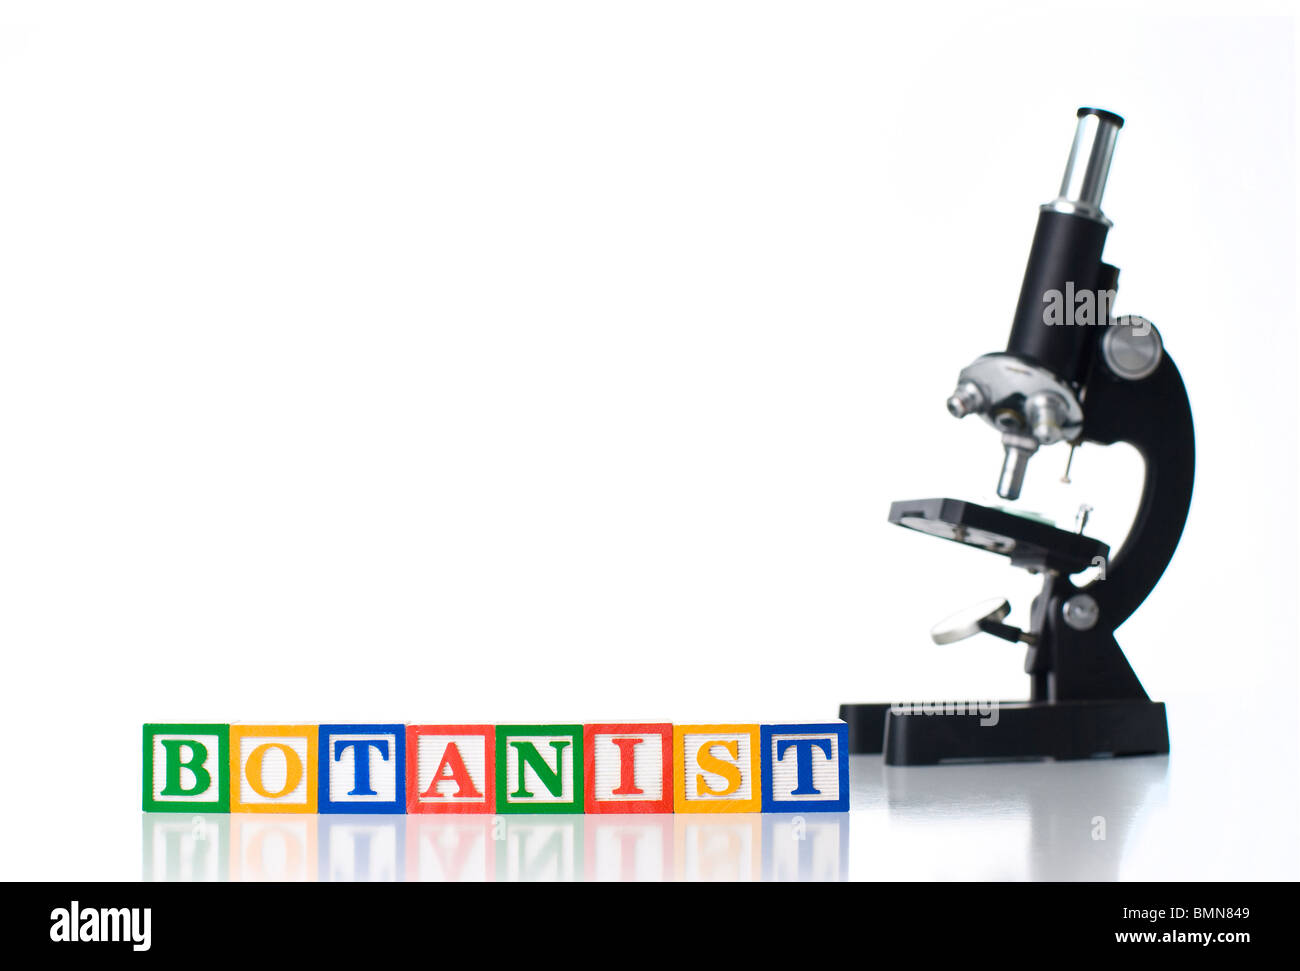 Bunte Kinder-Blöcke Rechtschreibung Botaniker mit einem Mikroskop Stockfoto